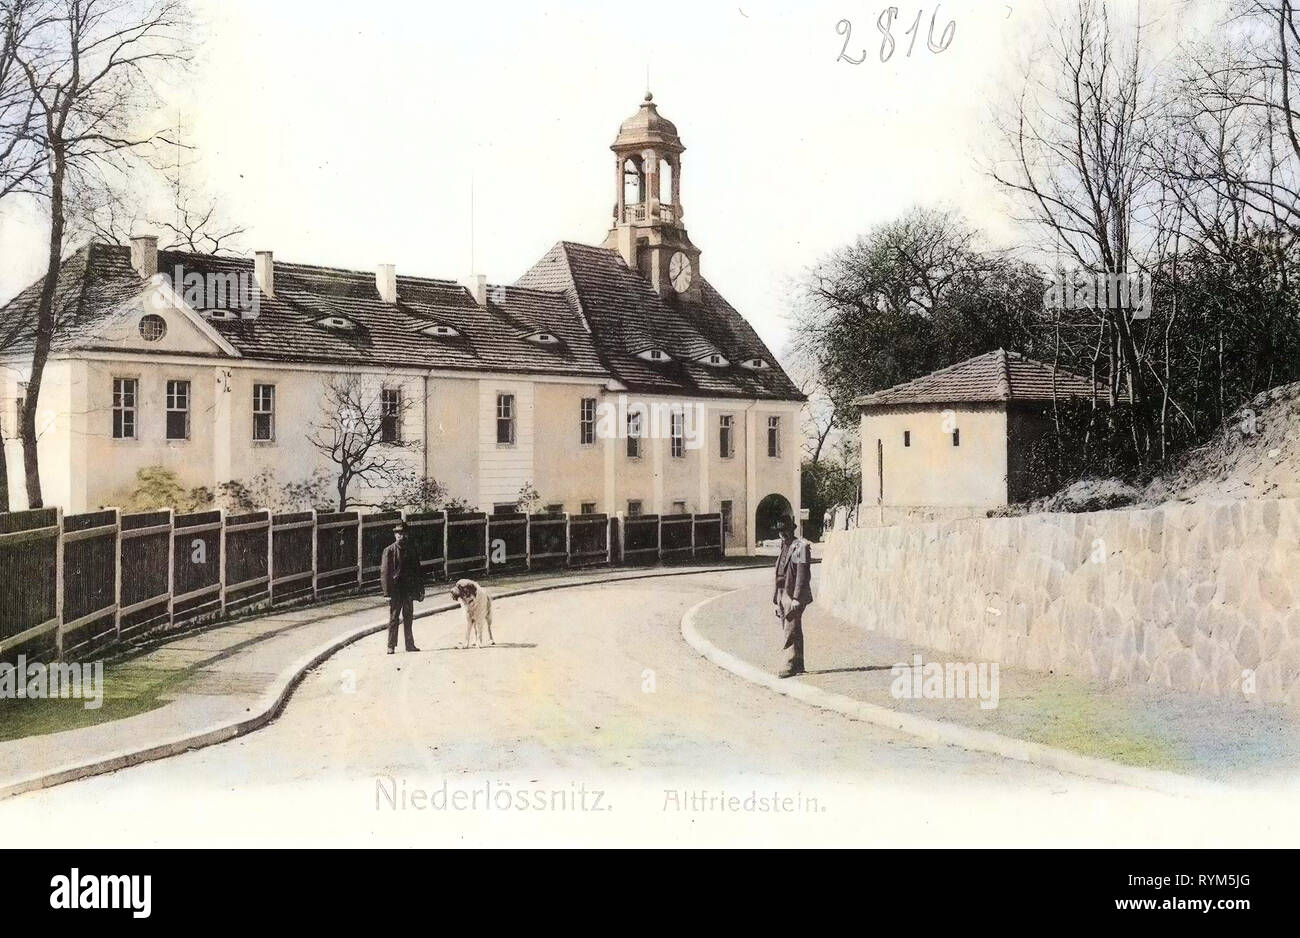 Altfriedstein, 1903, Landkreis Meißen, Niederlößnitz, Germany Stock Photo